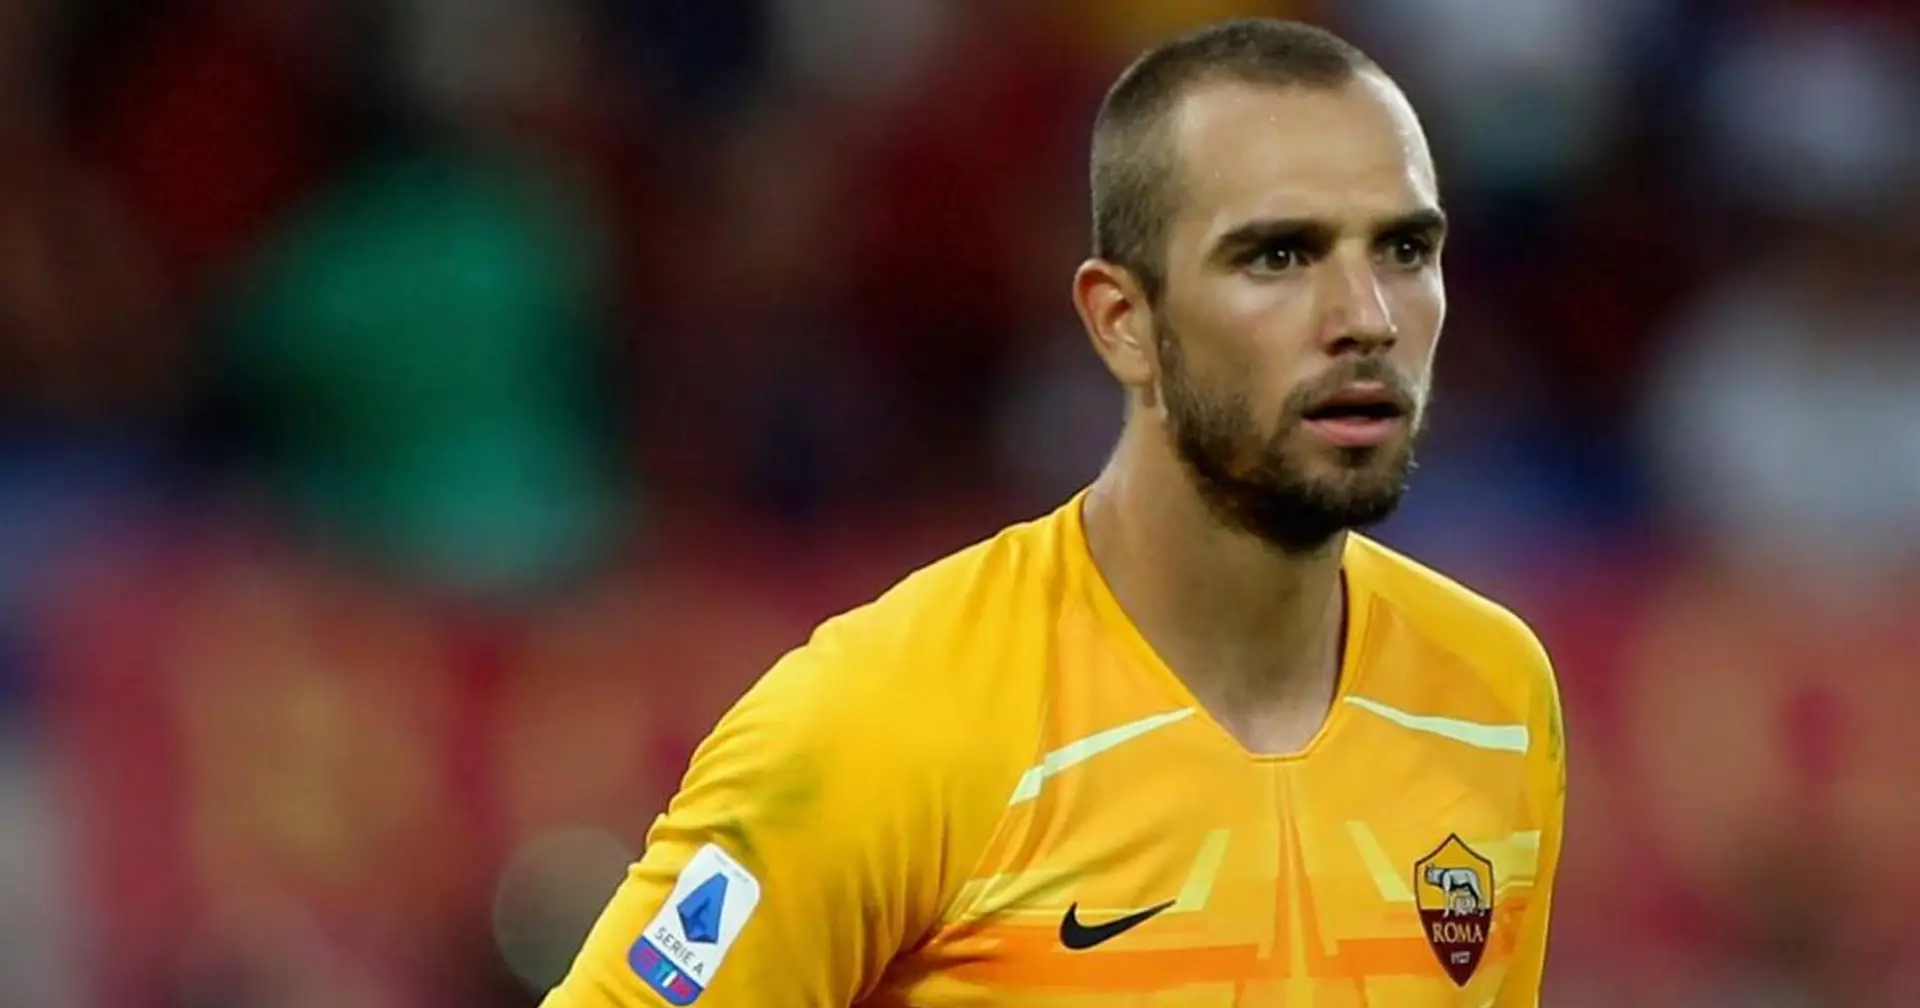 Accordo tra Roma e West-Ham per Pau Lopez ma il portiere vuole rimanere in giallorosso